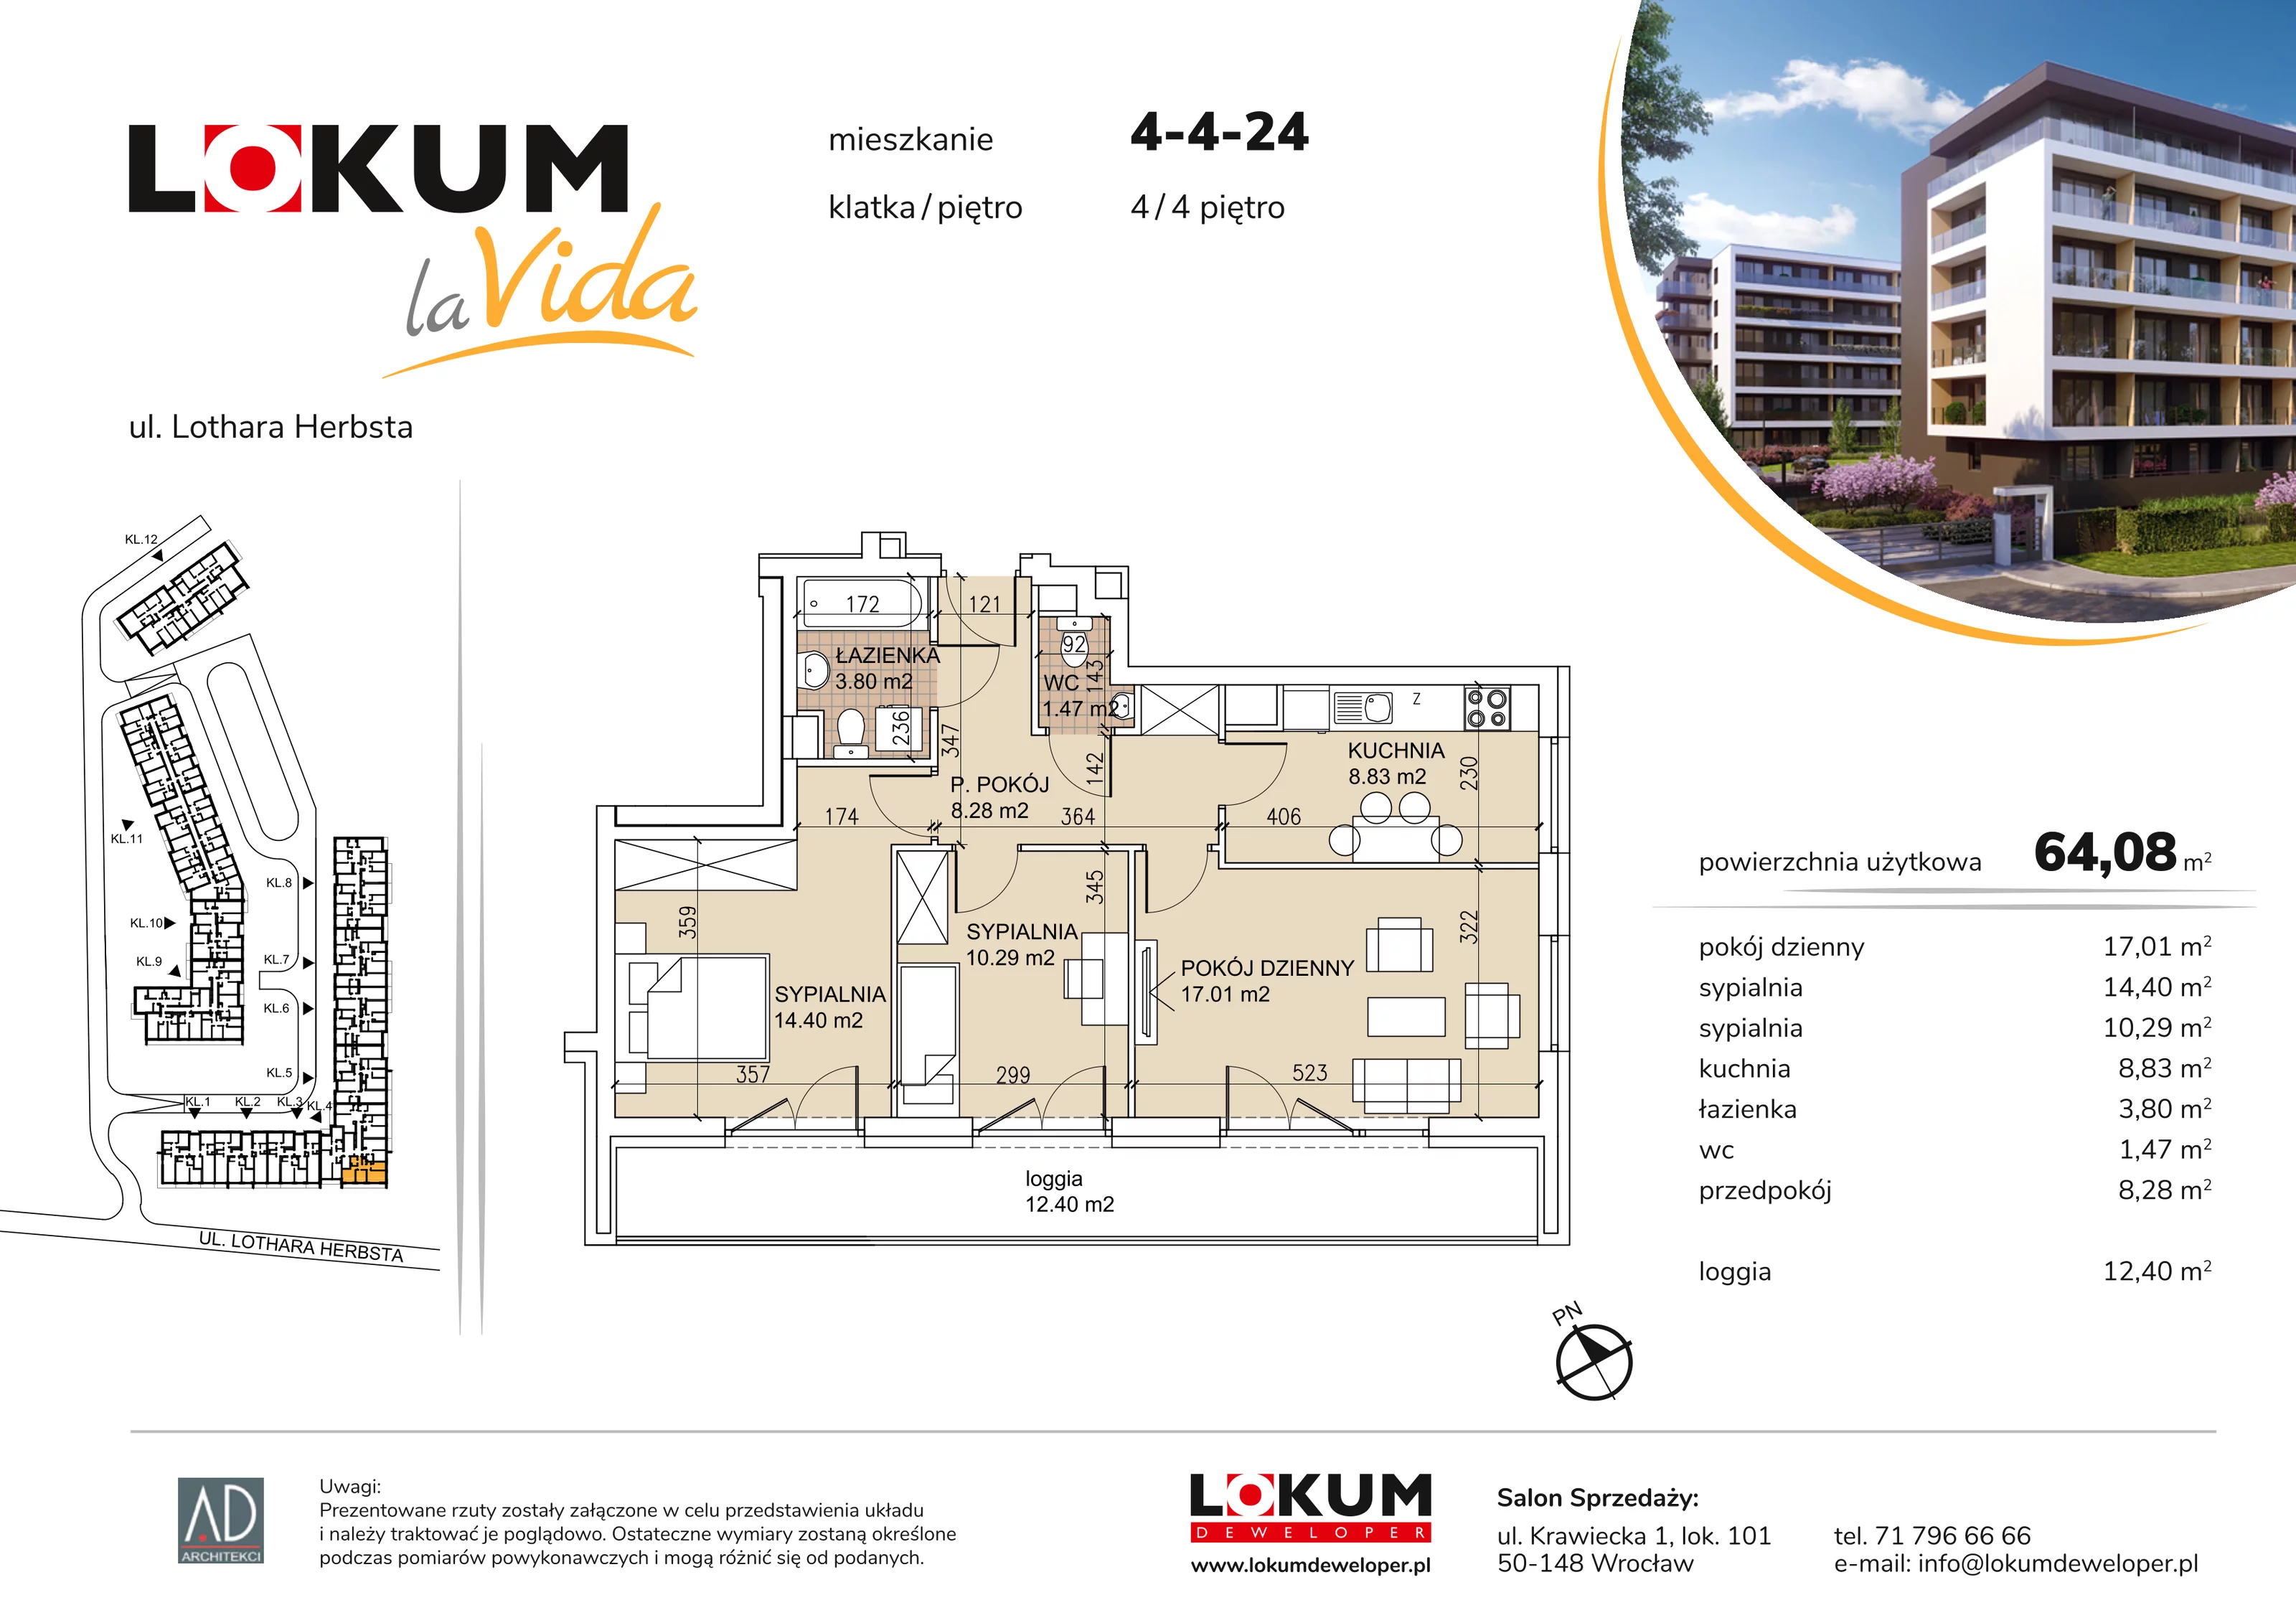 Mieszkanie 64,08 m², piętro 4, oferta nr 4-4-24, Lokum la Vida, Wrocław, Sołtysowice, ul. Lothara Herbsta